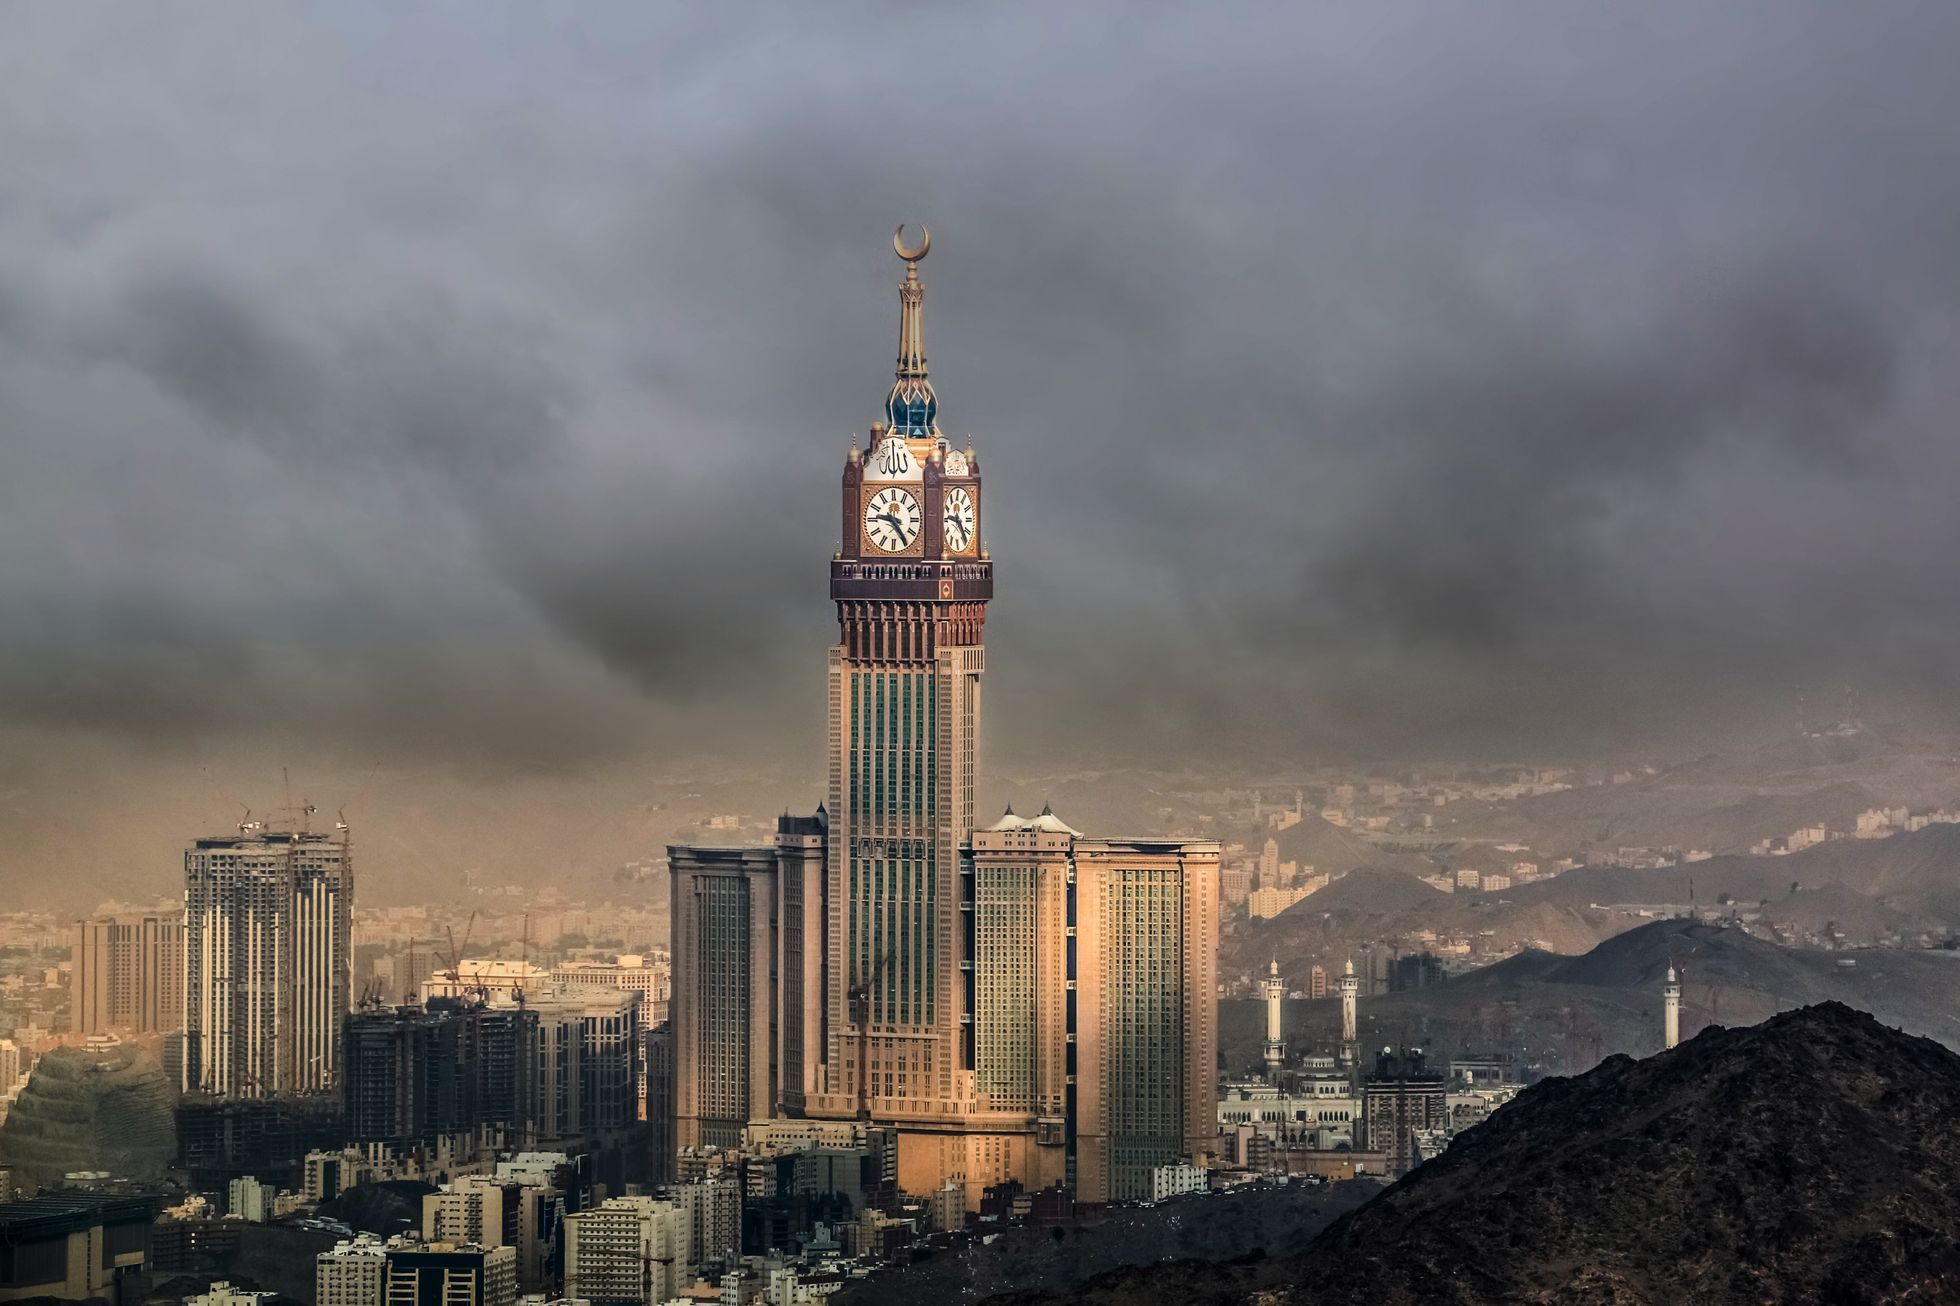 Makkah Royal Clock Tower  / Jednorázové užití / Fotogalerie / Podívejte se na fotografie 10 nejvyšších budov světa